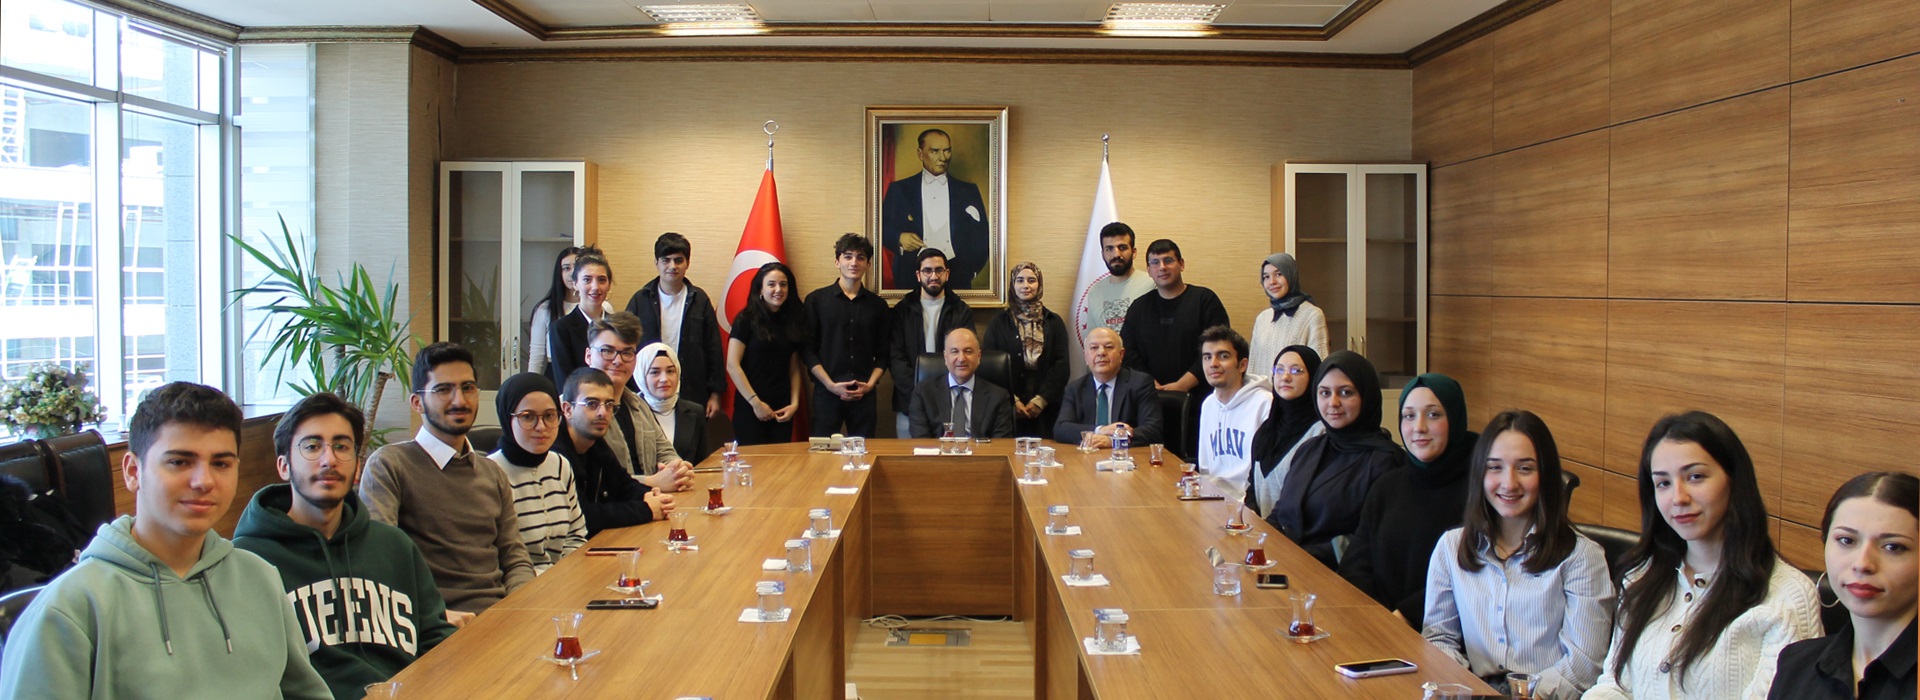 İstanbul Üniversitesi Sanat ve Hukuk Kulübü Öğrencileri Tarafından Başkanlığımıza Ziyarette Bulunulmuş Olup Öğrencilere "Hukuk Sistemi, Hukuk Eğitimi ve Hakimlik Mesleği" Konuları Hakkında Bilgilendirmeler Yapıldı